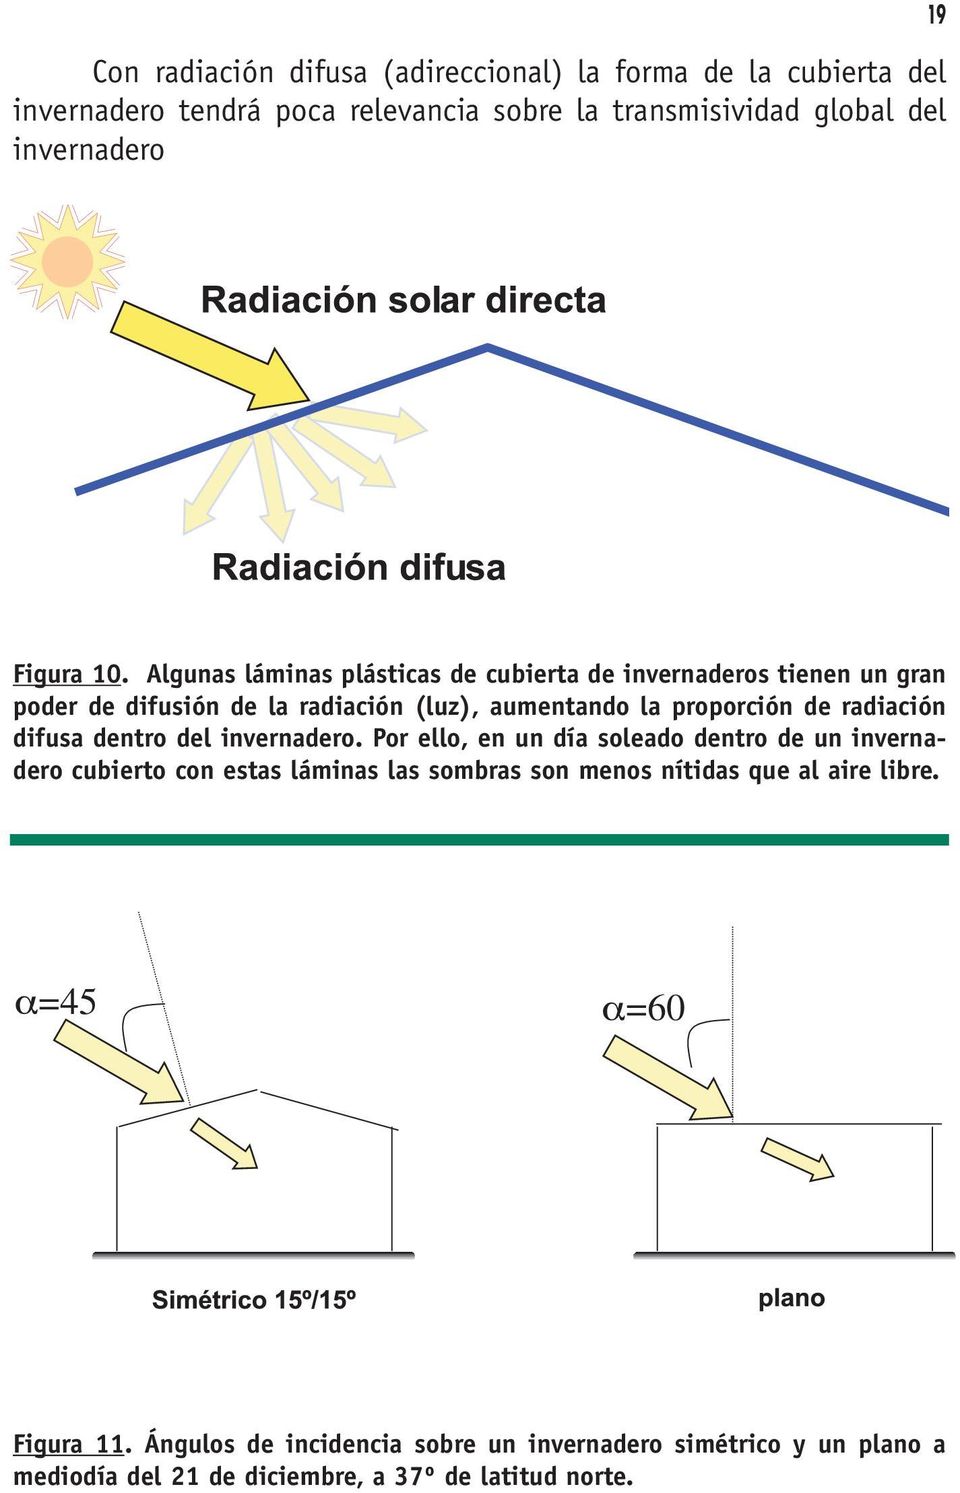 Algunas láminas plásticas de cubierta de invernaderos tienen un gran poder de difusión de la radiación (luz), aumentando la proporción de radiación